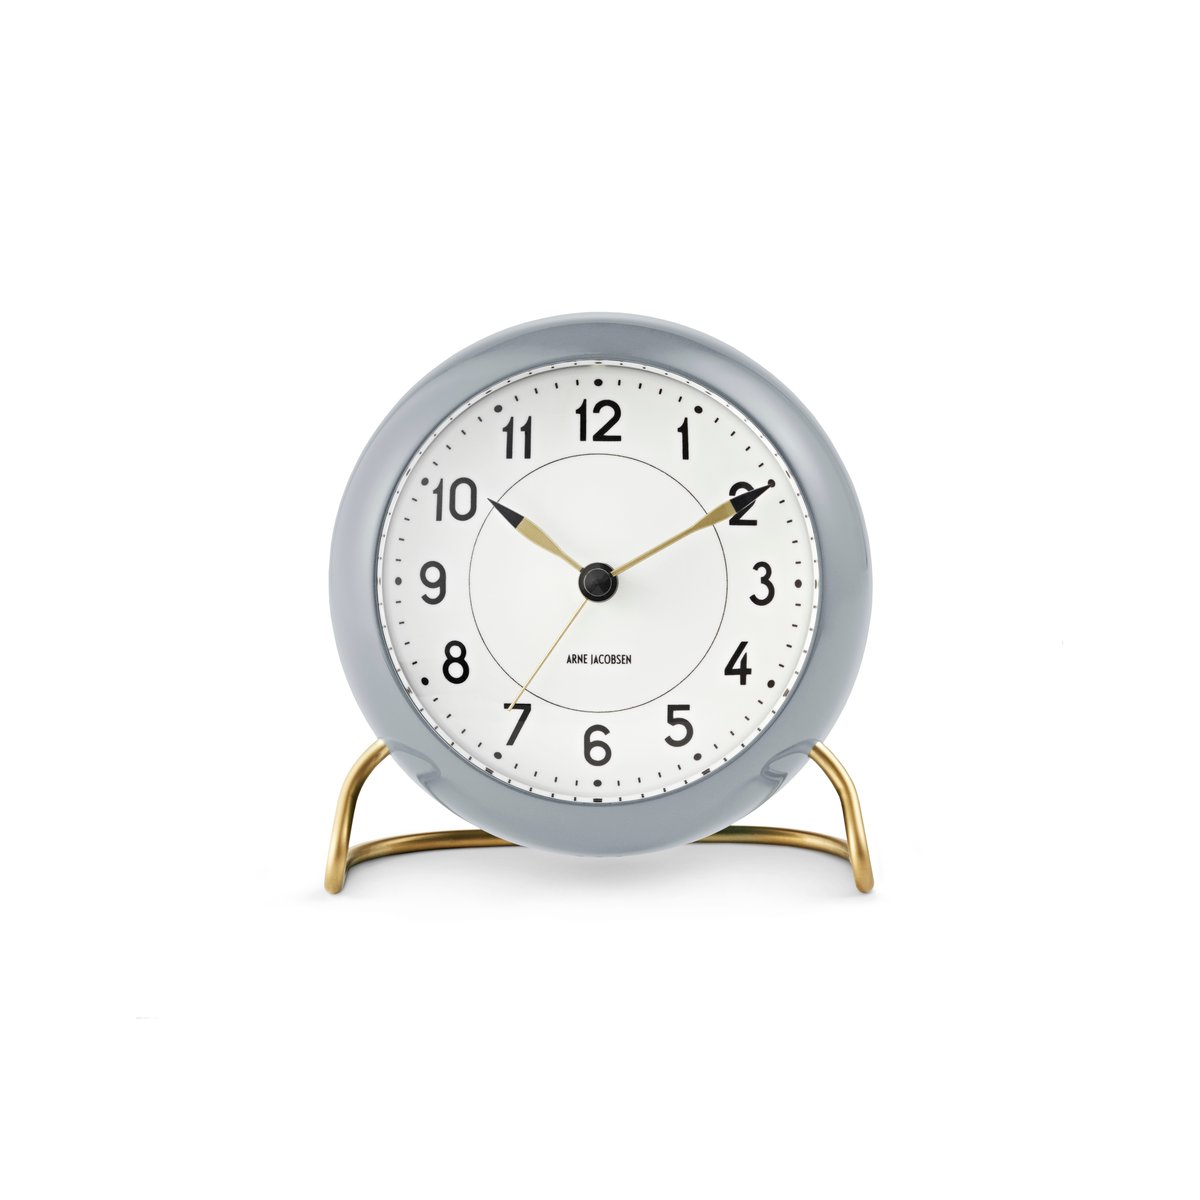 Arne Jacobsen Clocks AJ Station bordsur 12 cm grå-hvid